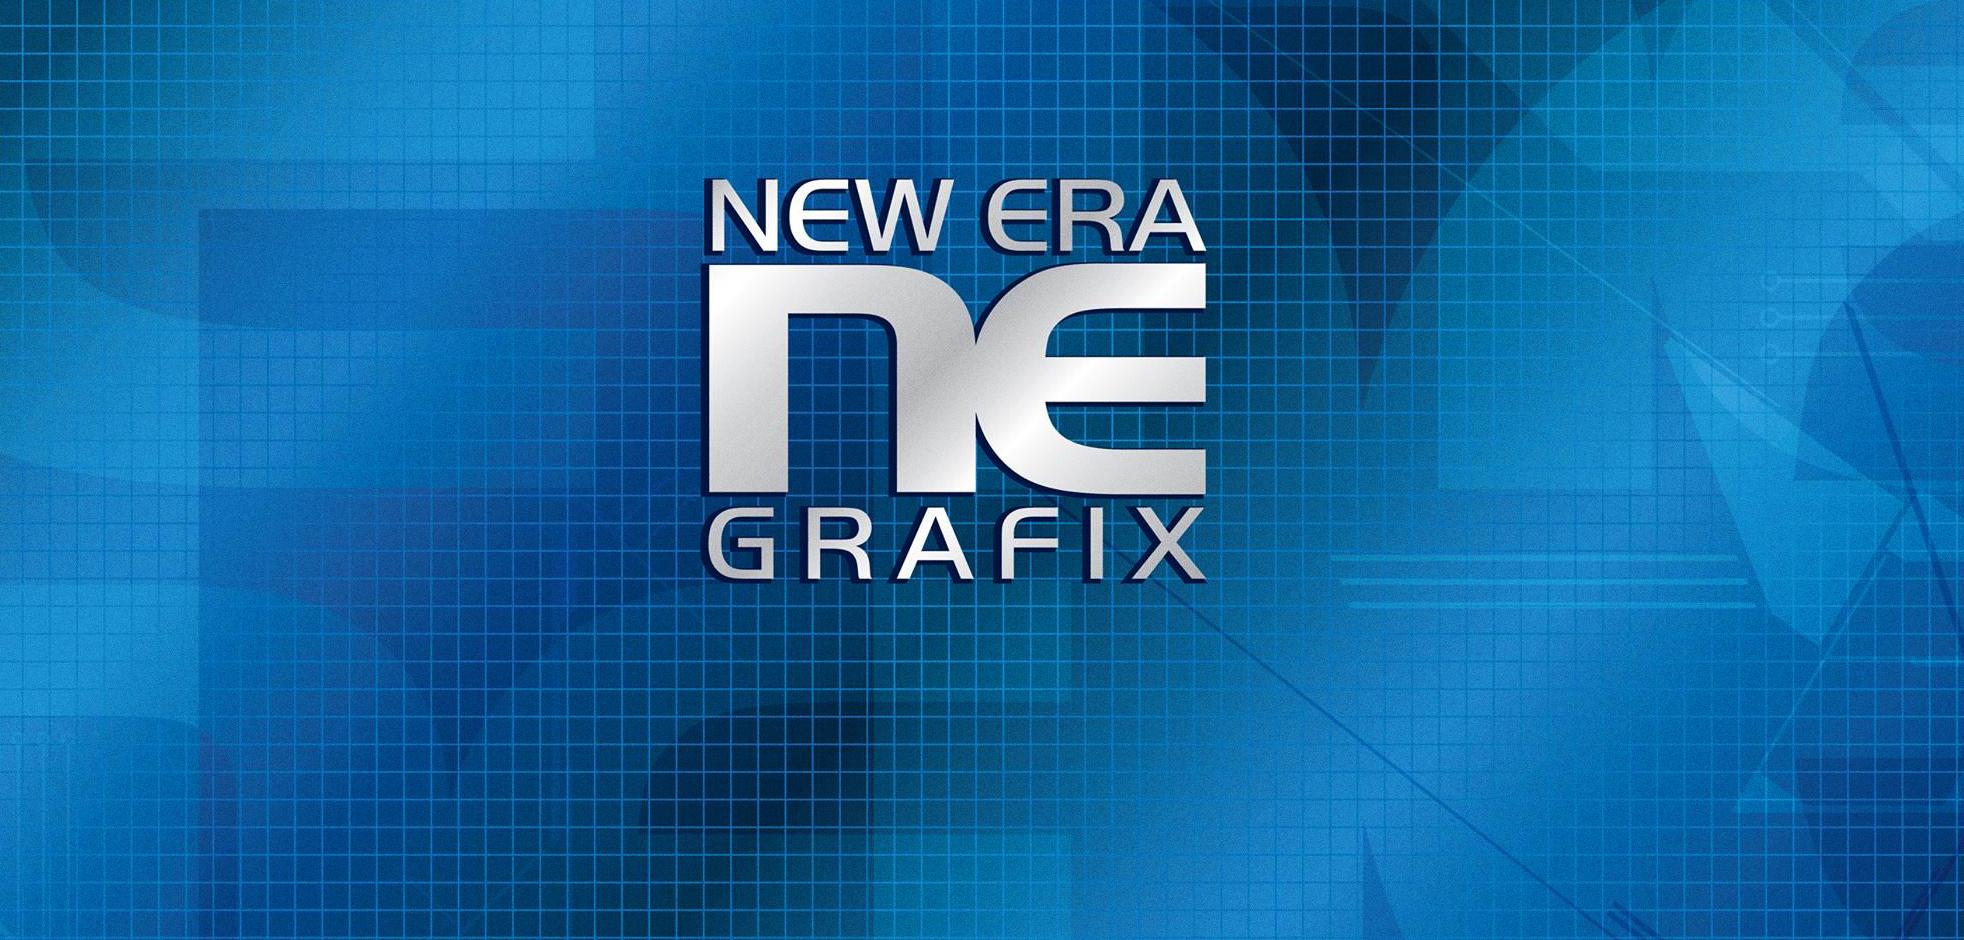 New Era Grafix